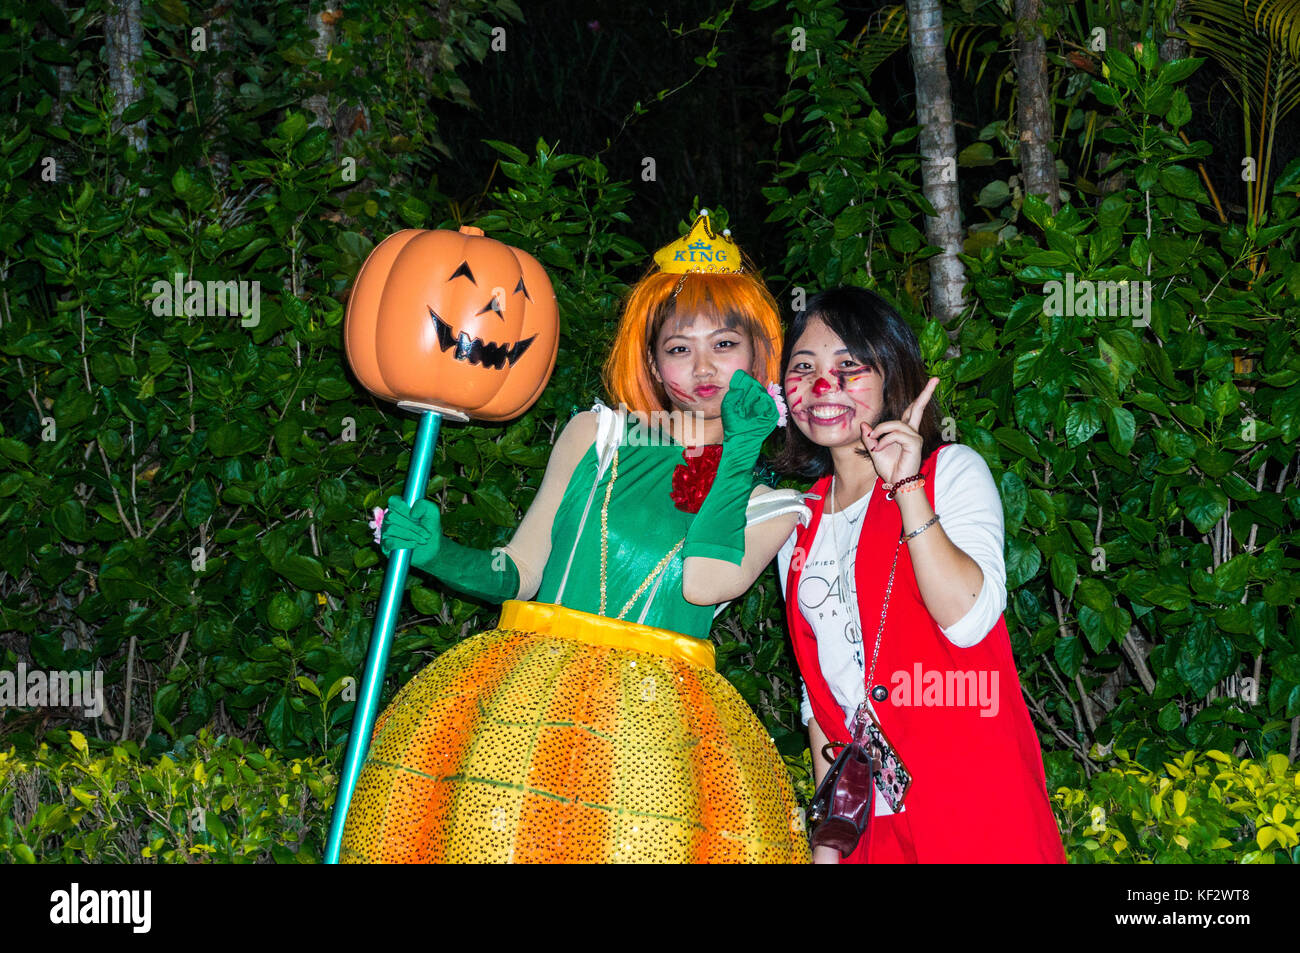 Halloween juerguistas, niña vestida como una calabaza, en un evento de Halloween en Shenzhen, China Foto de stock